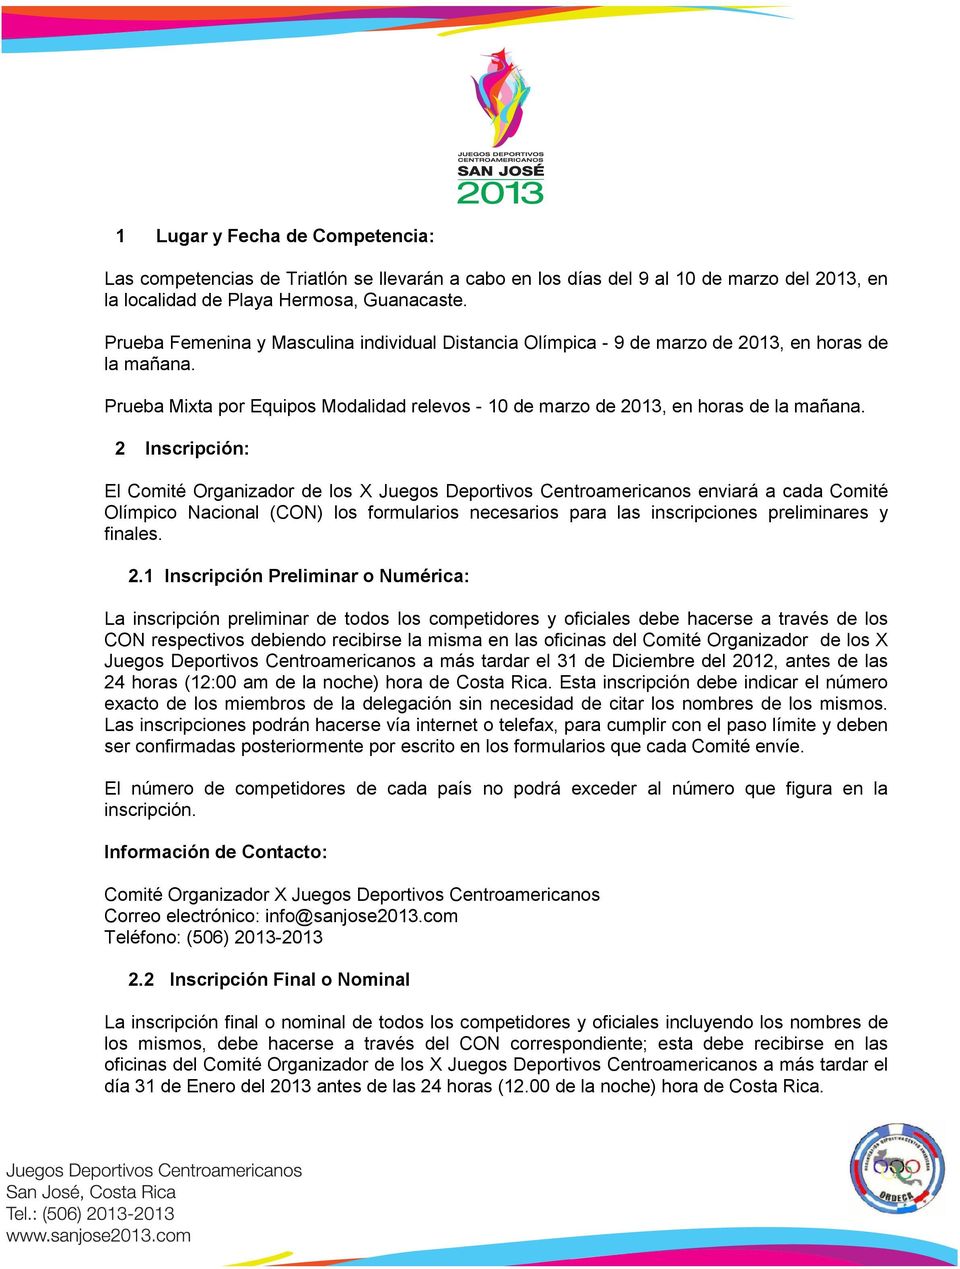 2 Inscripción: El Comité Organizador de los X Juegos Deportivos Centroamericanos enviará a cada Comité Olímpico Nacional (CON) los formularios necesarios para las inscripciones preliminares y finales.